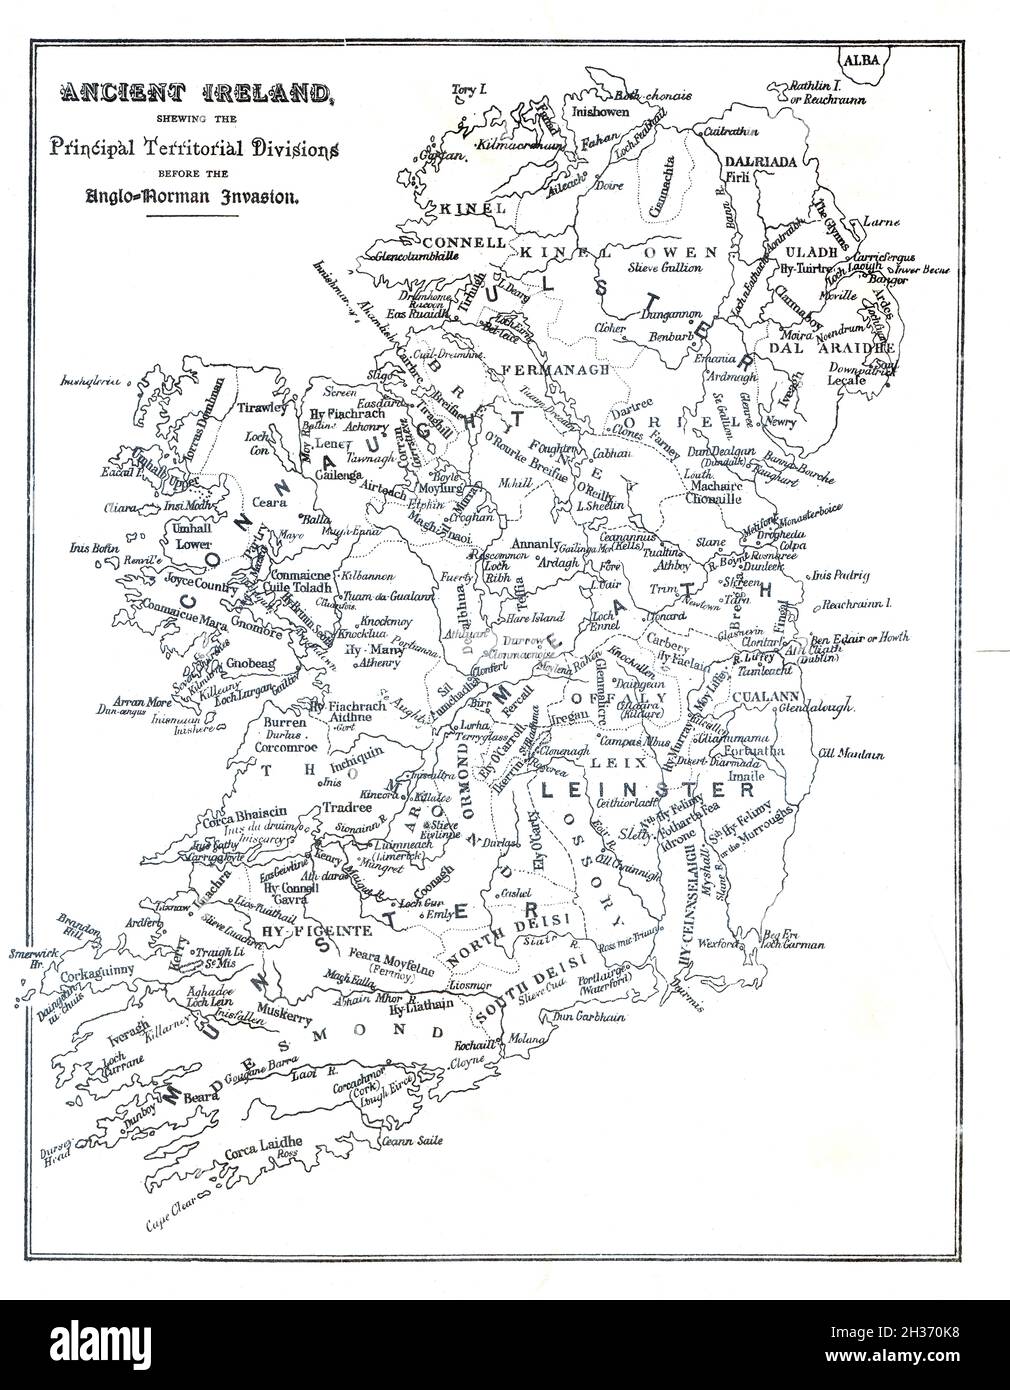 Mapa de Irlanda, antes de la invasión anglo normanda mostrando clanes, septos y divisiones territoriales Foto de stock